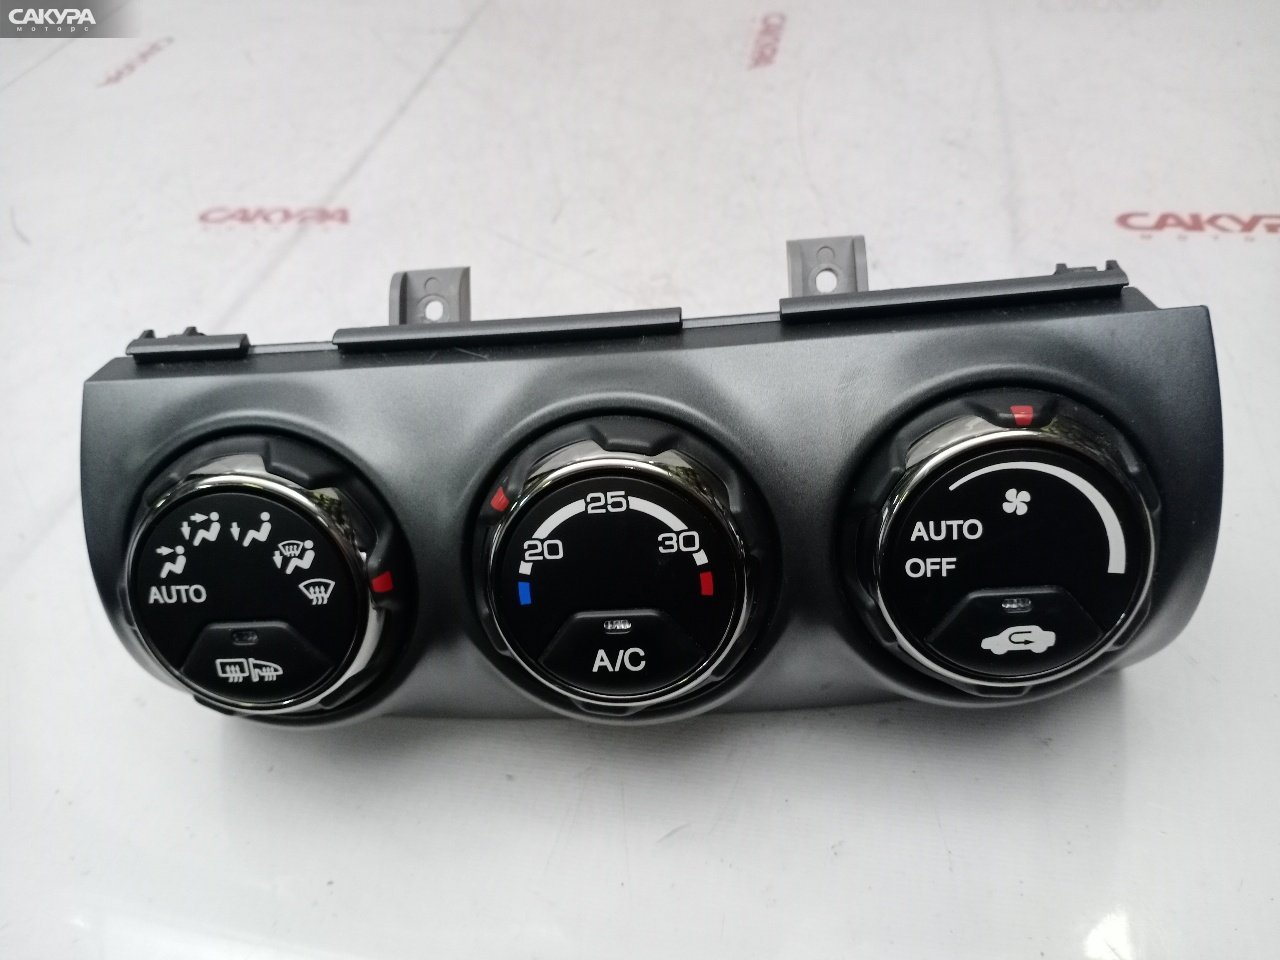 Блок управления климат-контролем Honda CR-V RD7 K24A: купить в Сакура Красноярск.